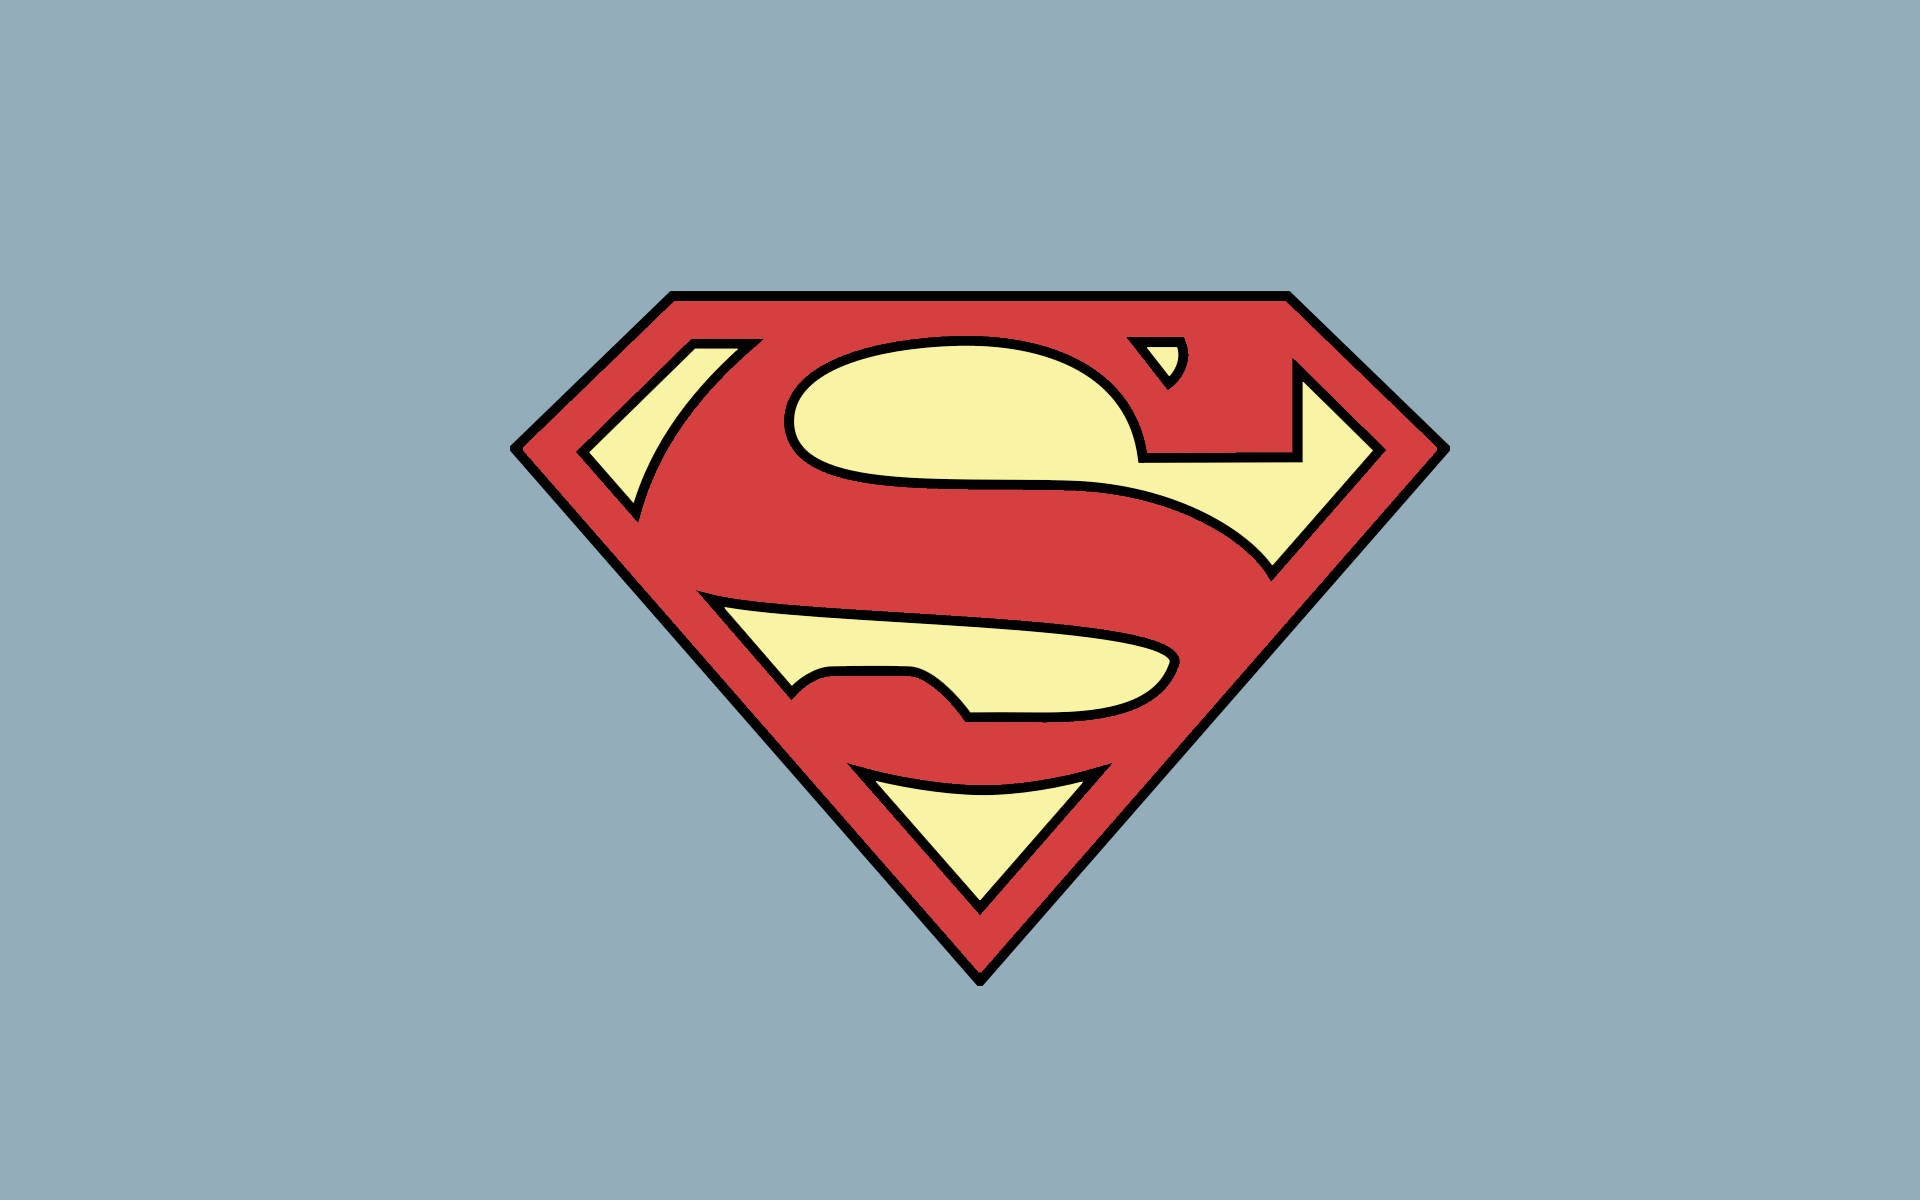 Minimalistischespastellästhetik Superman-logo Wallpaper